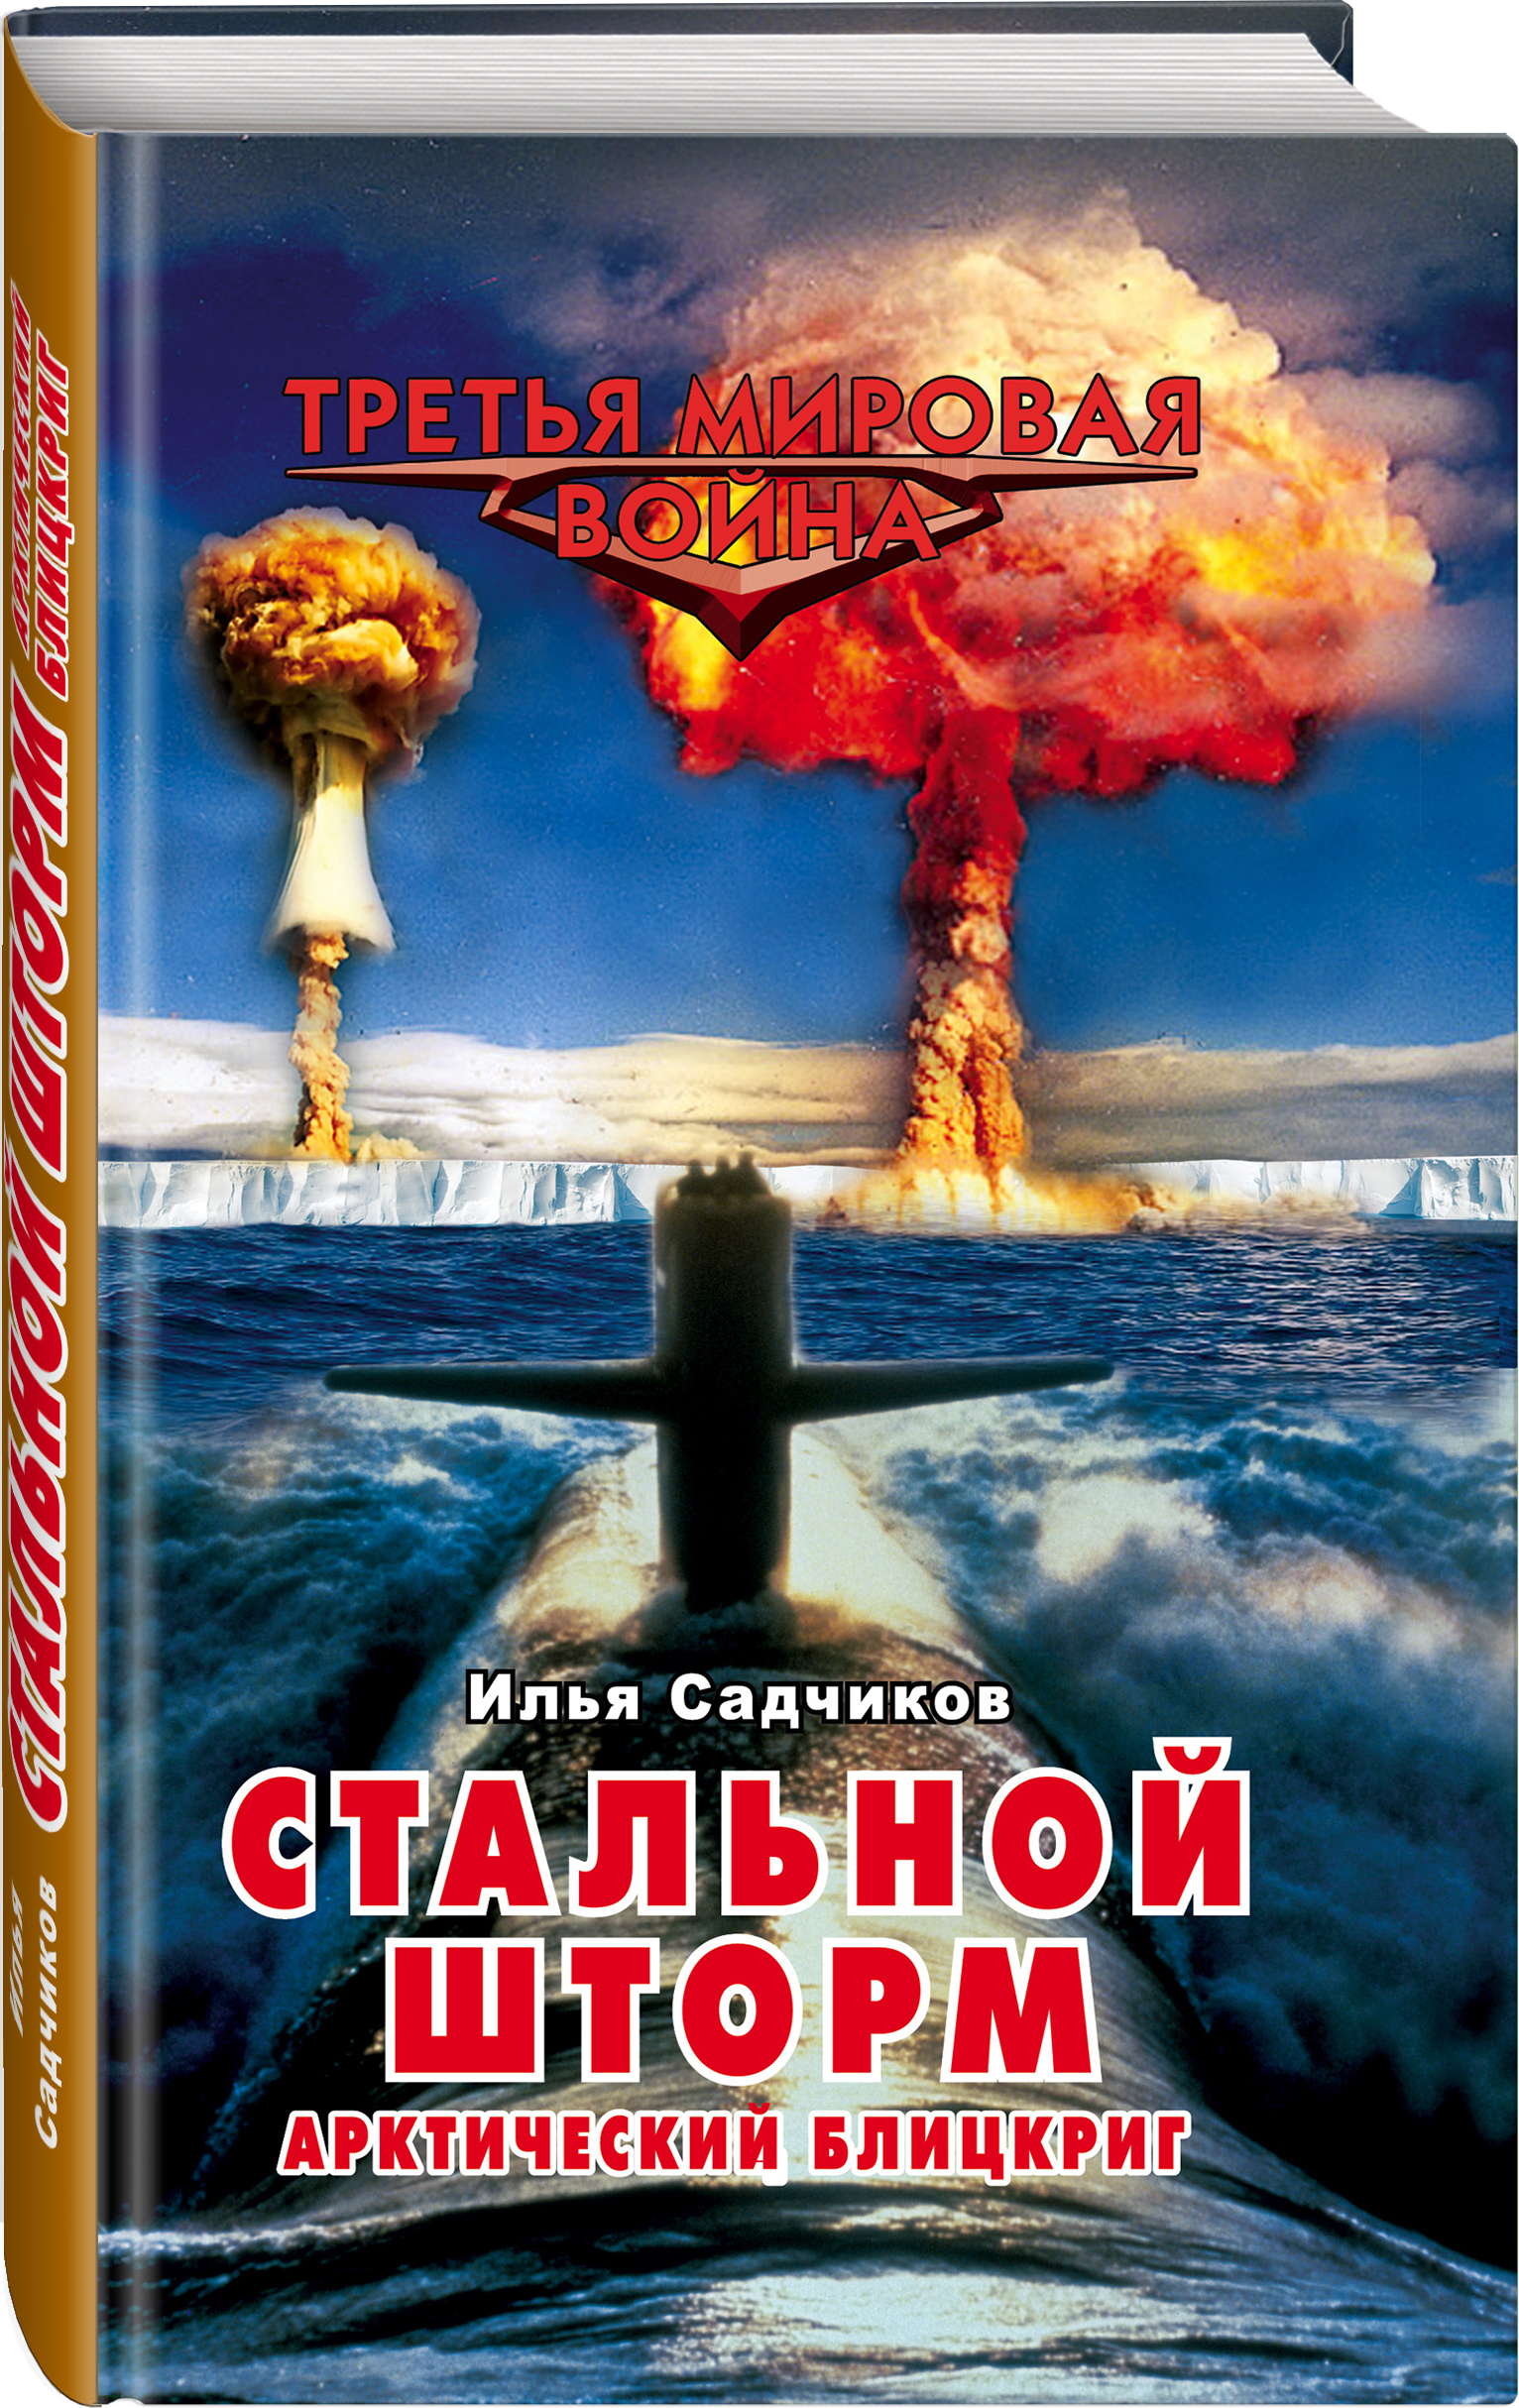 https://cdn.eksmo.ru/v2/ITD000000000183434/COVER/cover3d1.jpg